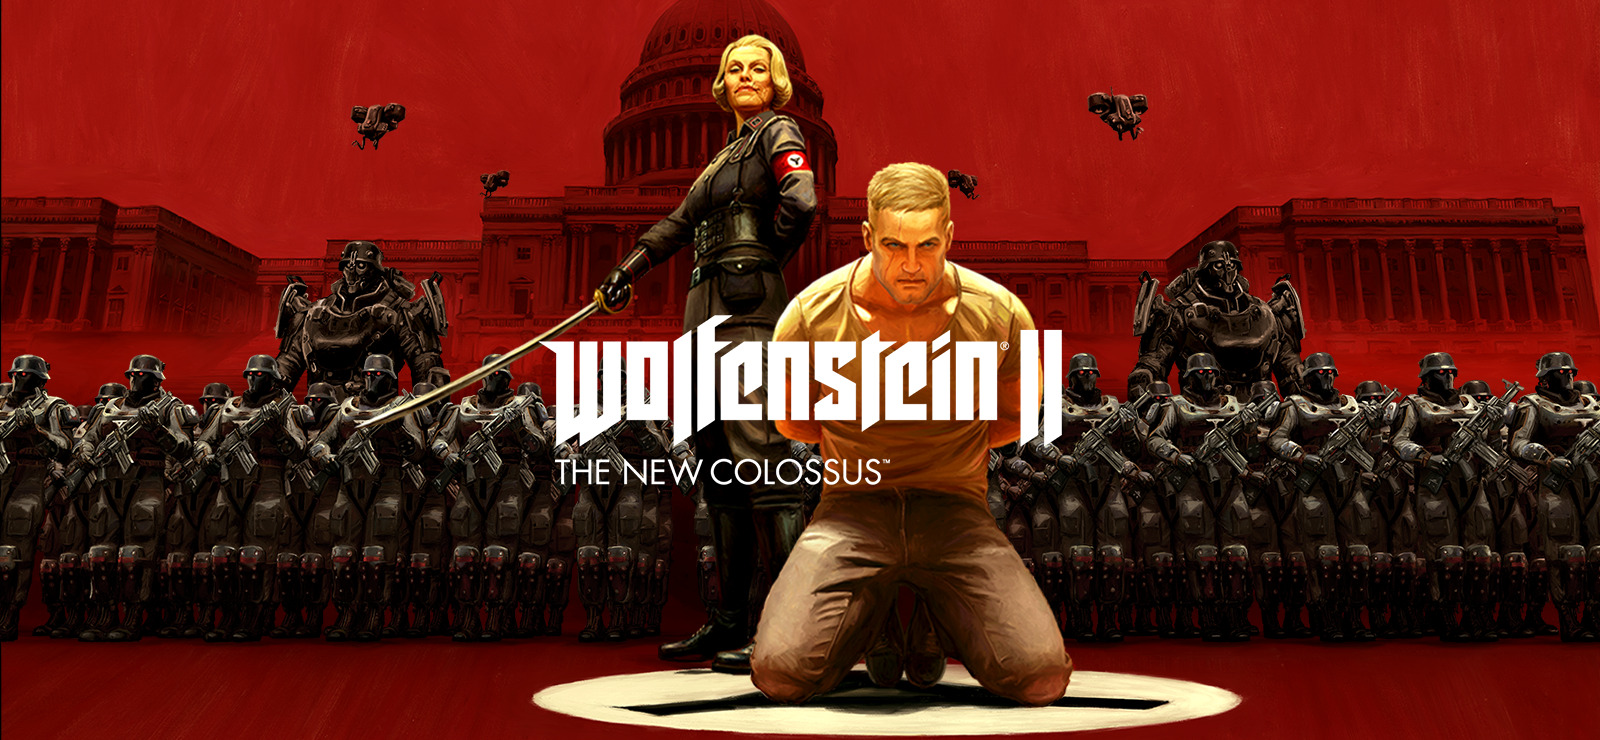 Lænestol Pind medley 85% Wolfenstein II: The New Colossus on GOG.com